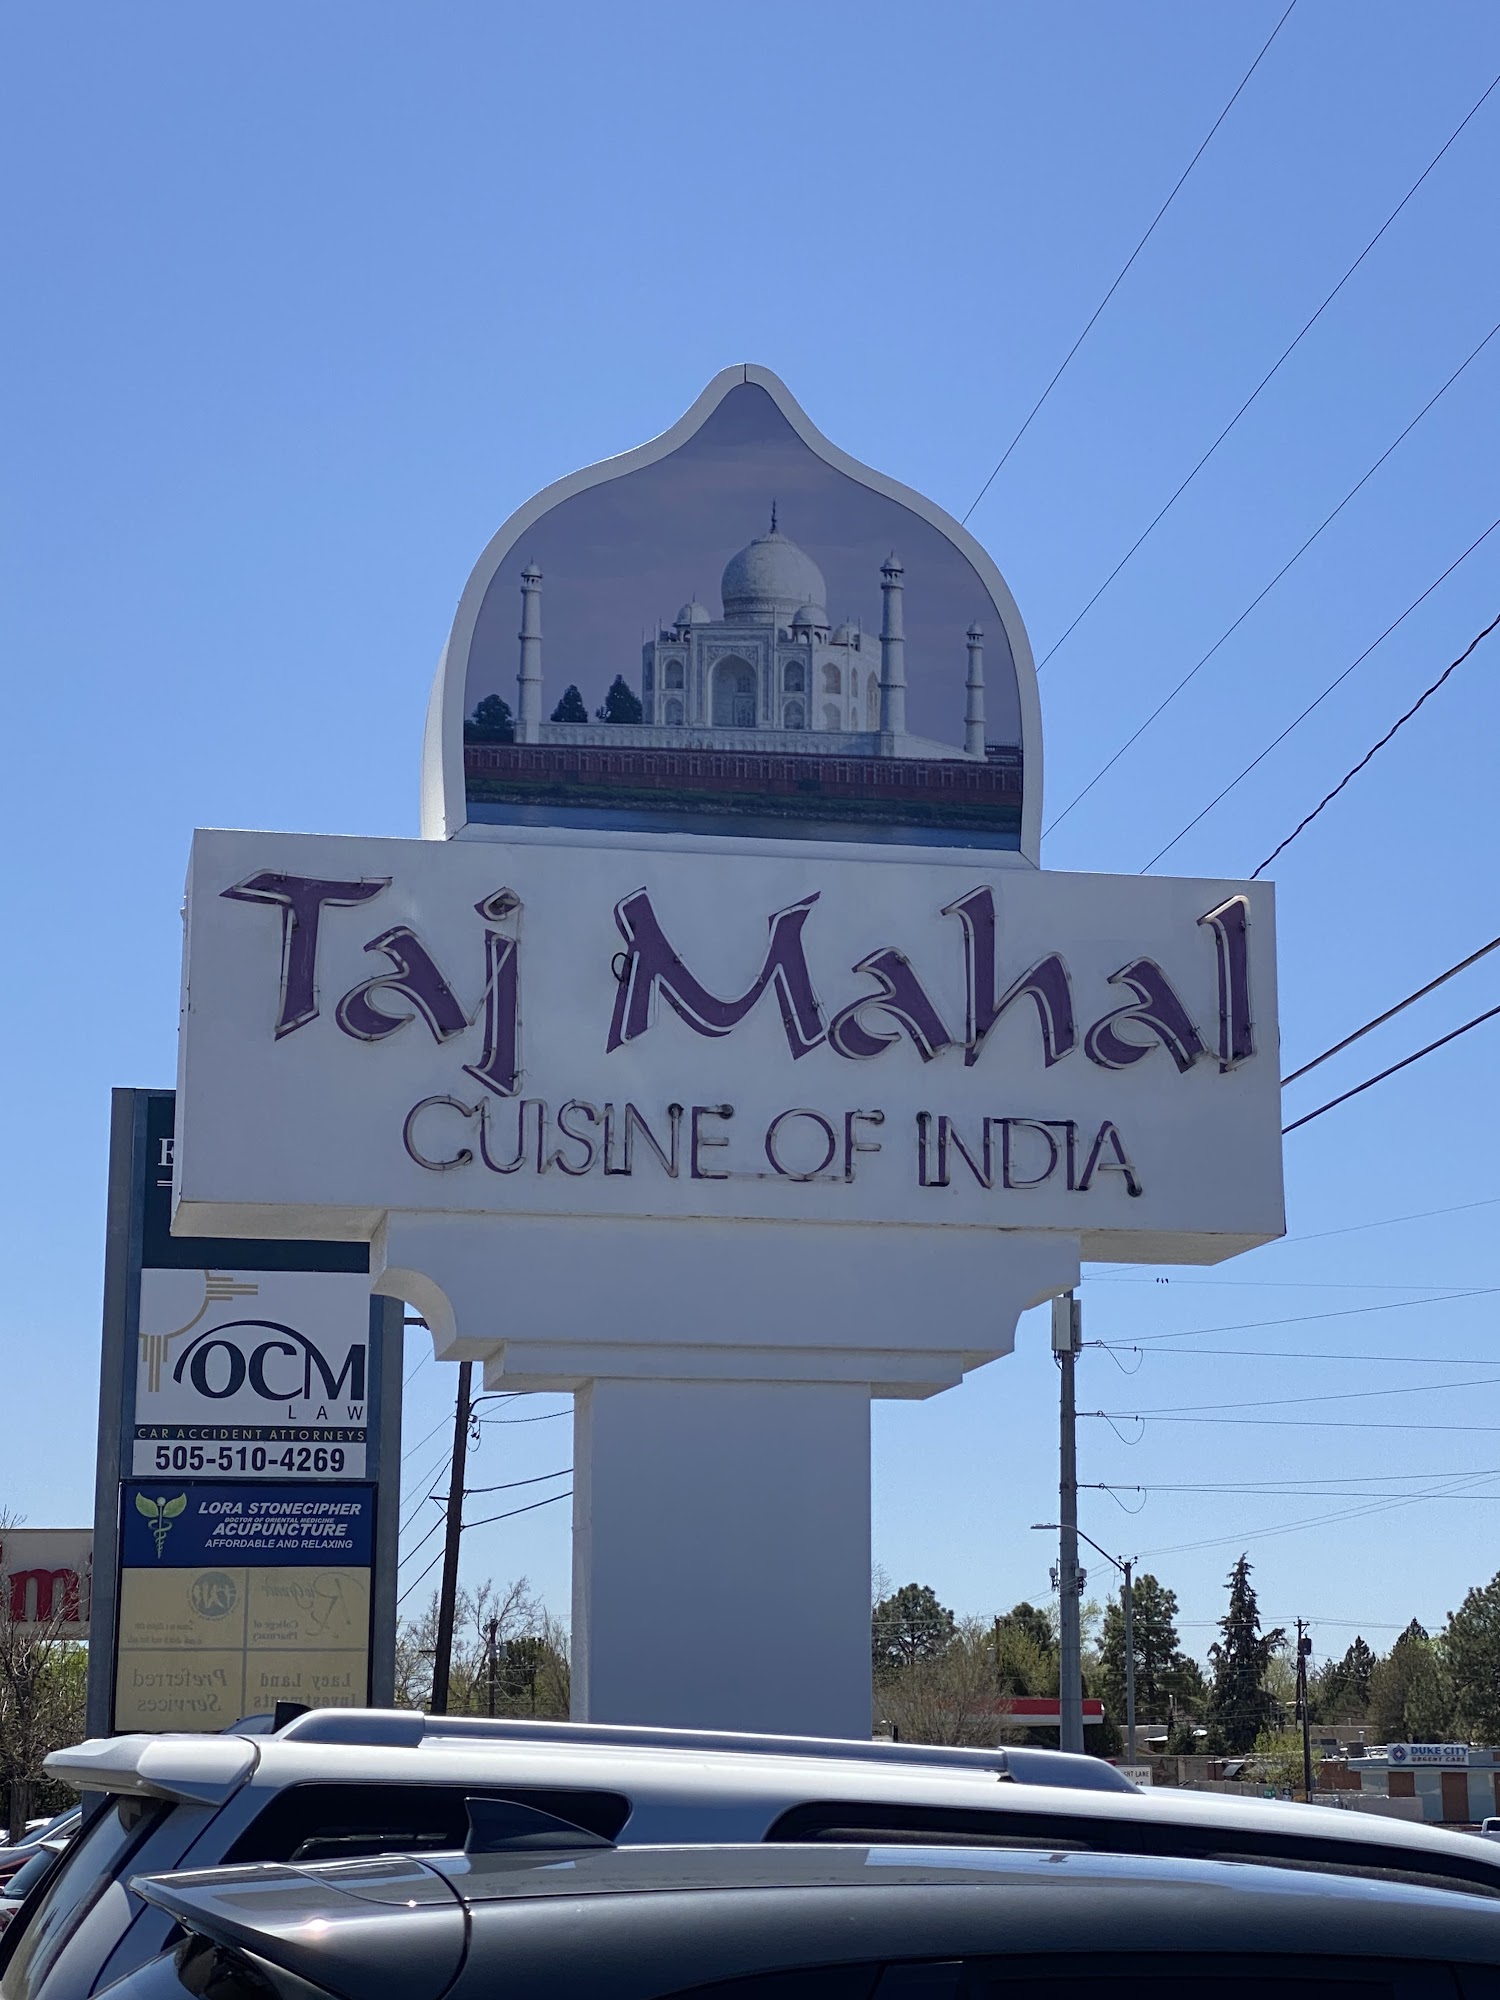 Taj Mahal Cuisine of India